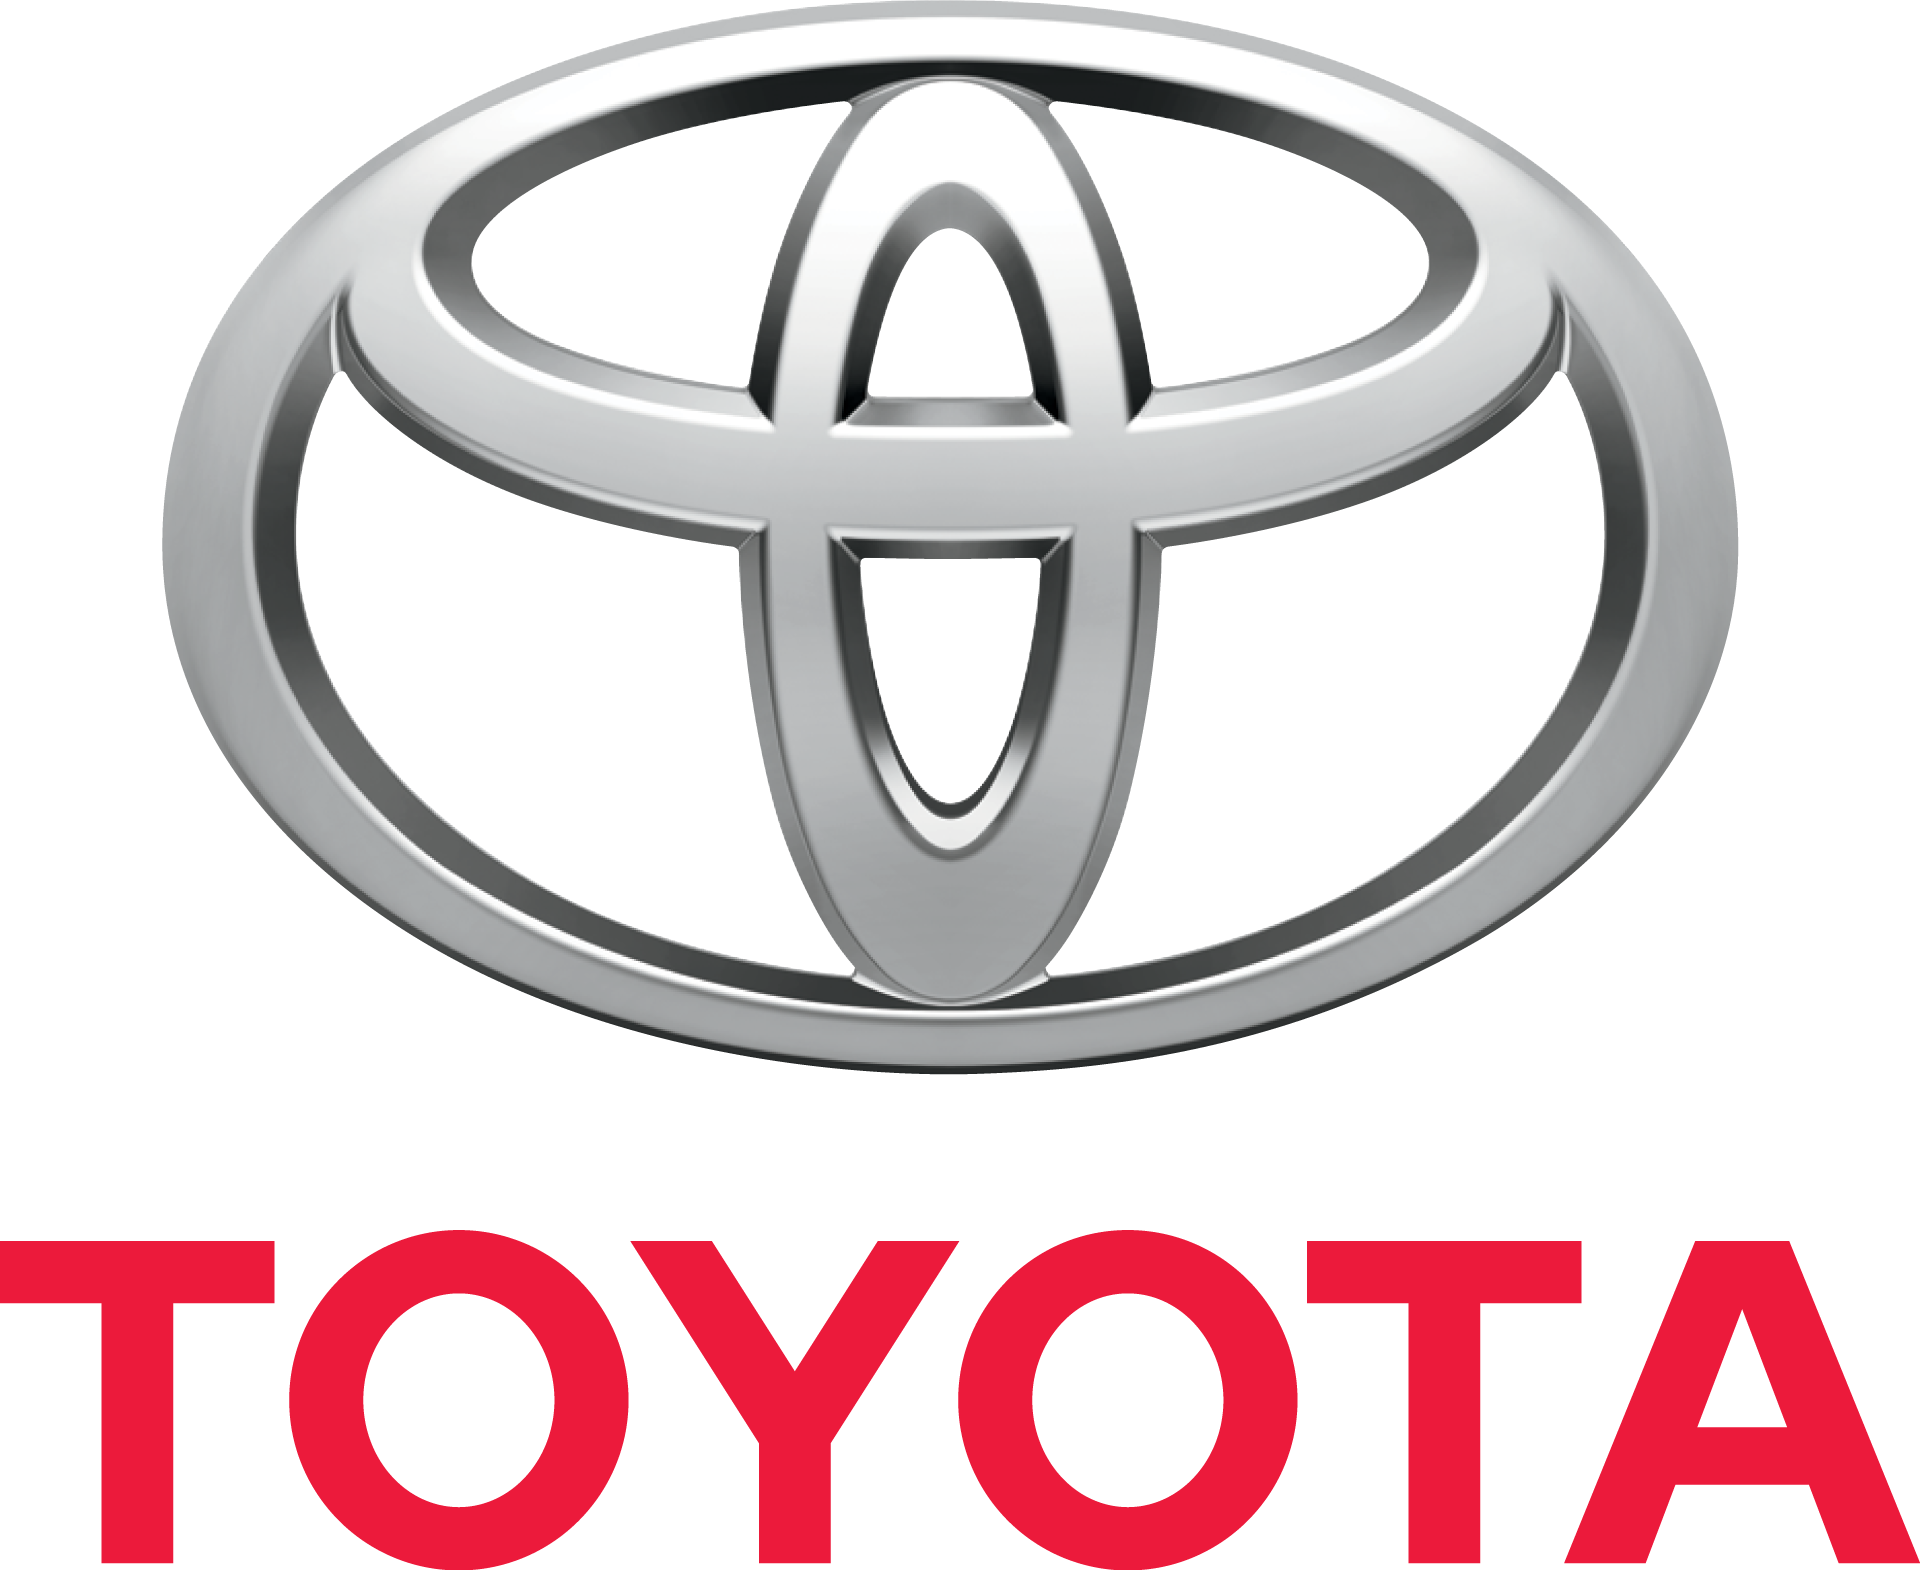 Toyota PNG image, free car im